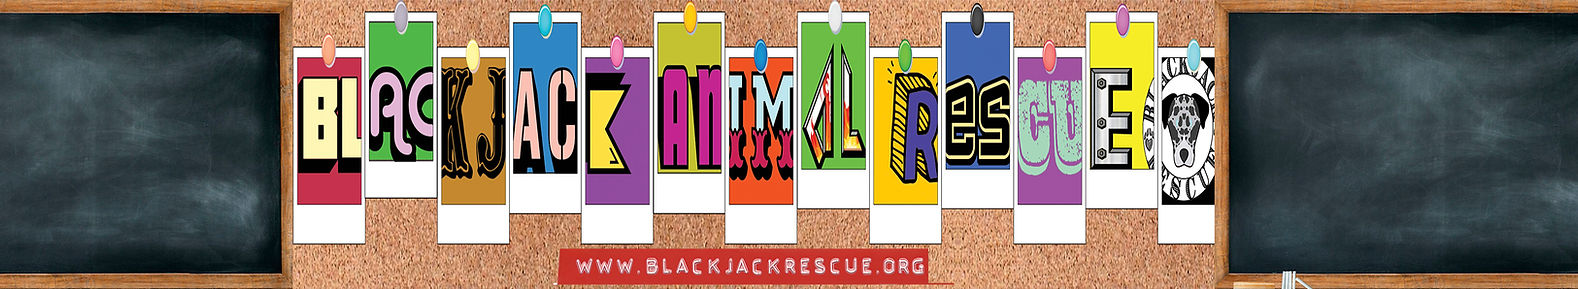 Blackjack Animal Rescue